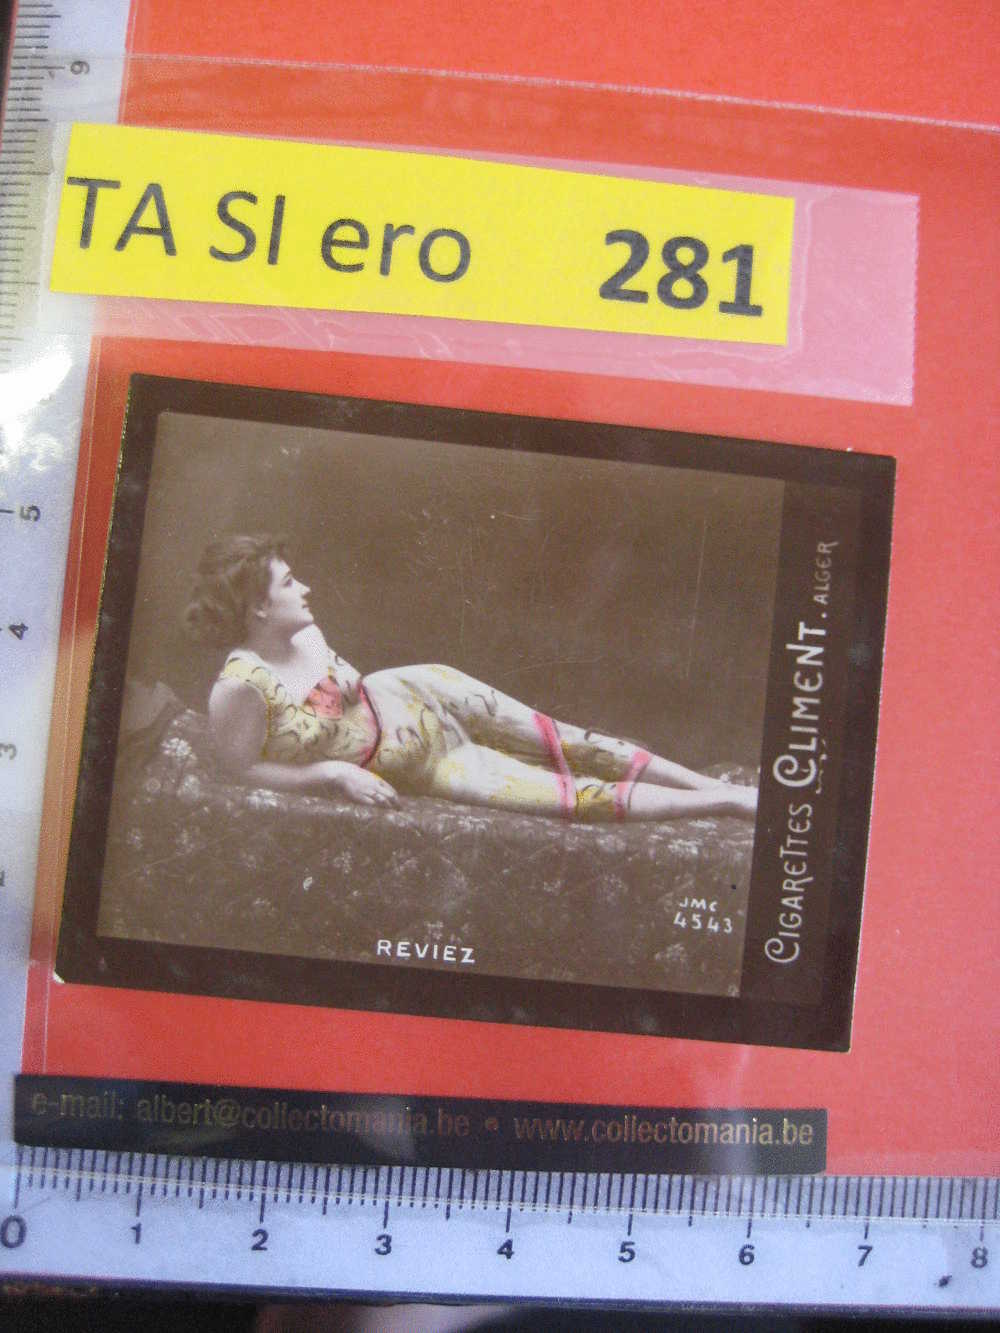 REVIEZ  - Jmc 4543 -  CLIMENT  Erotic EROTIQUE Carte REAL PHOTO  Tobacco Card  ALGER Risqué Nue Naked - Autres Marques